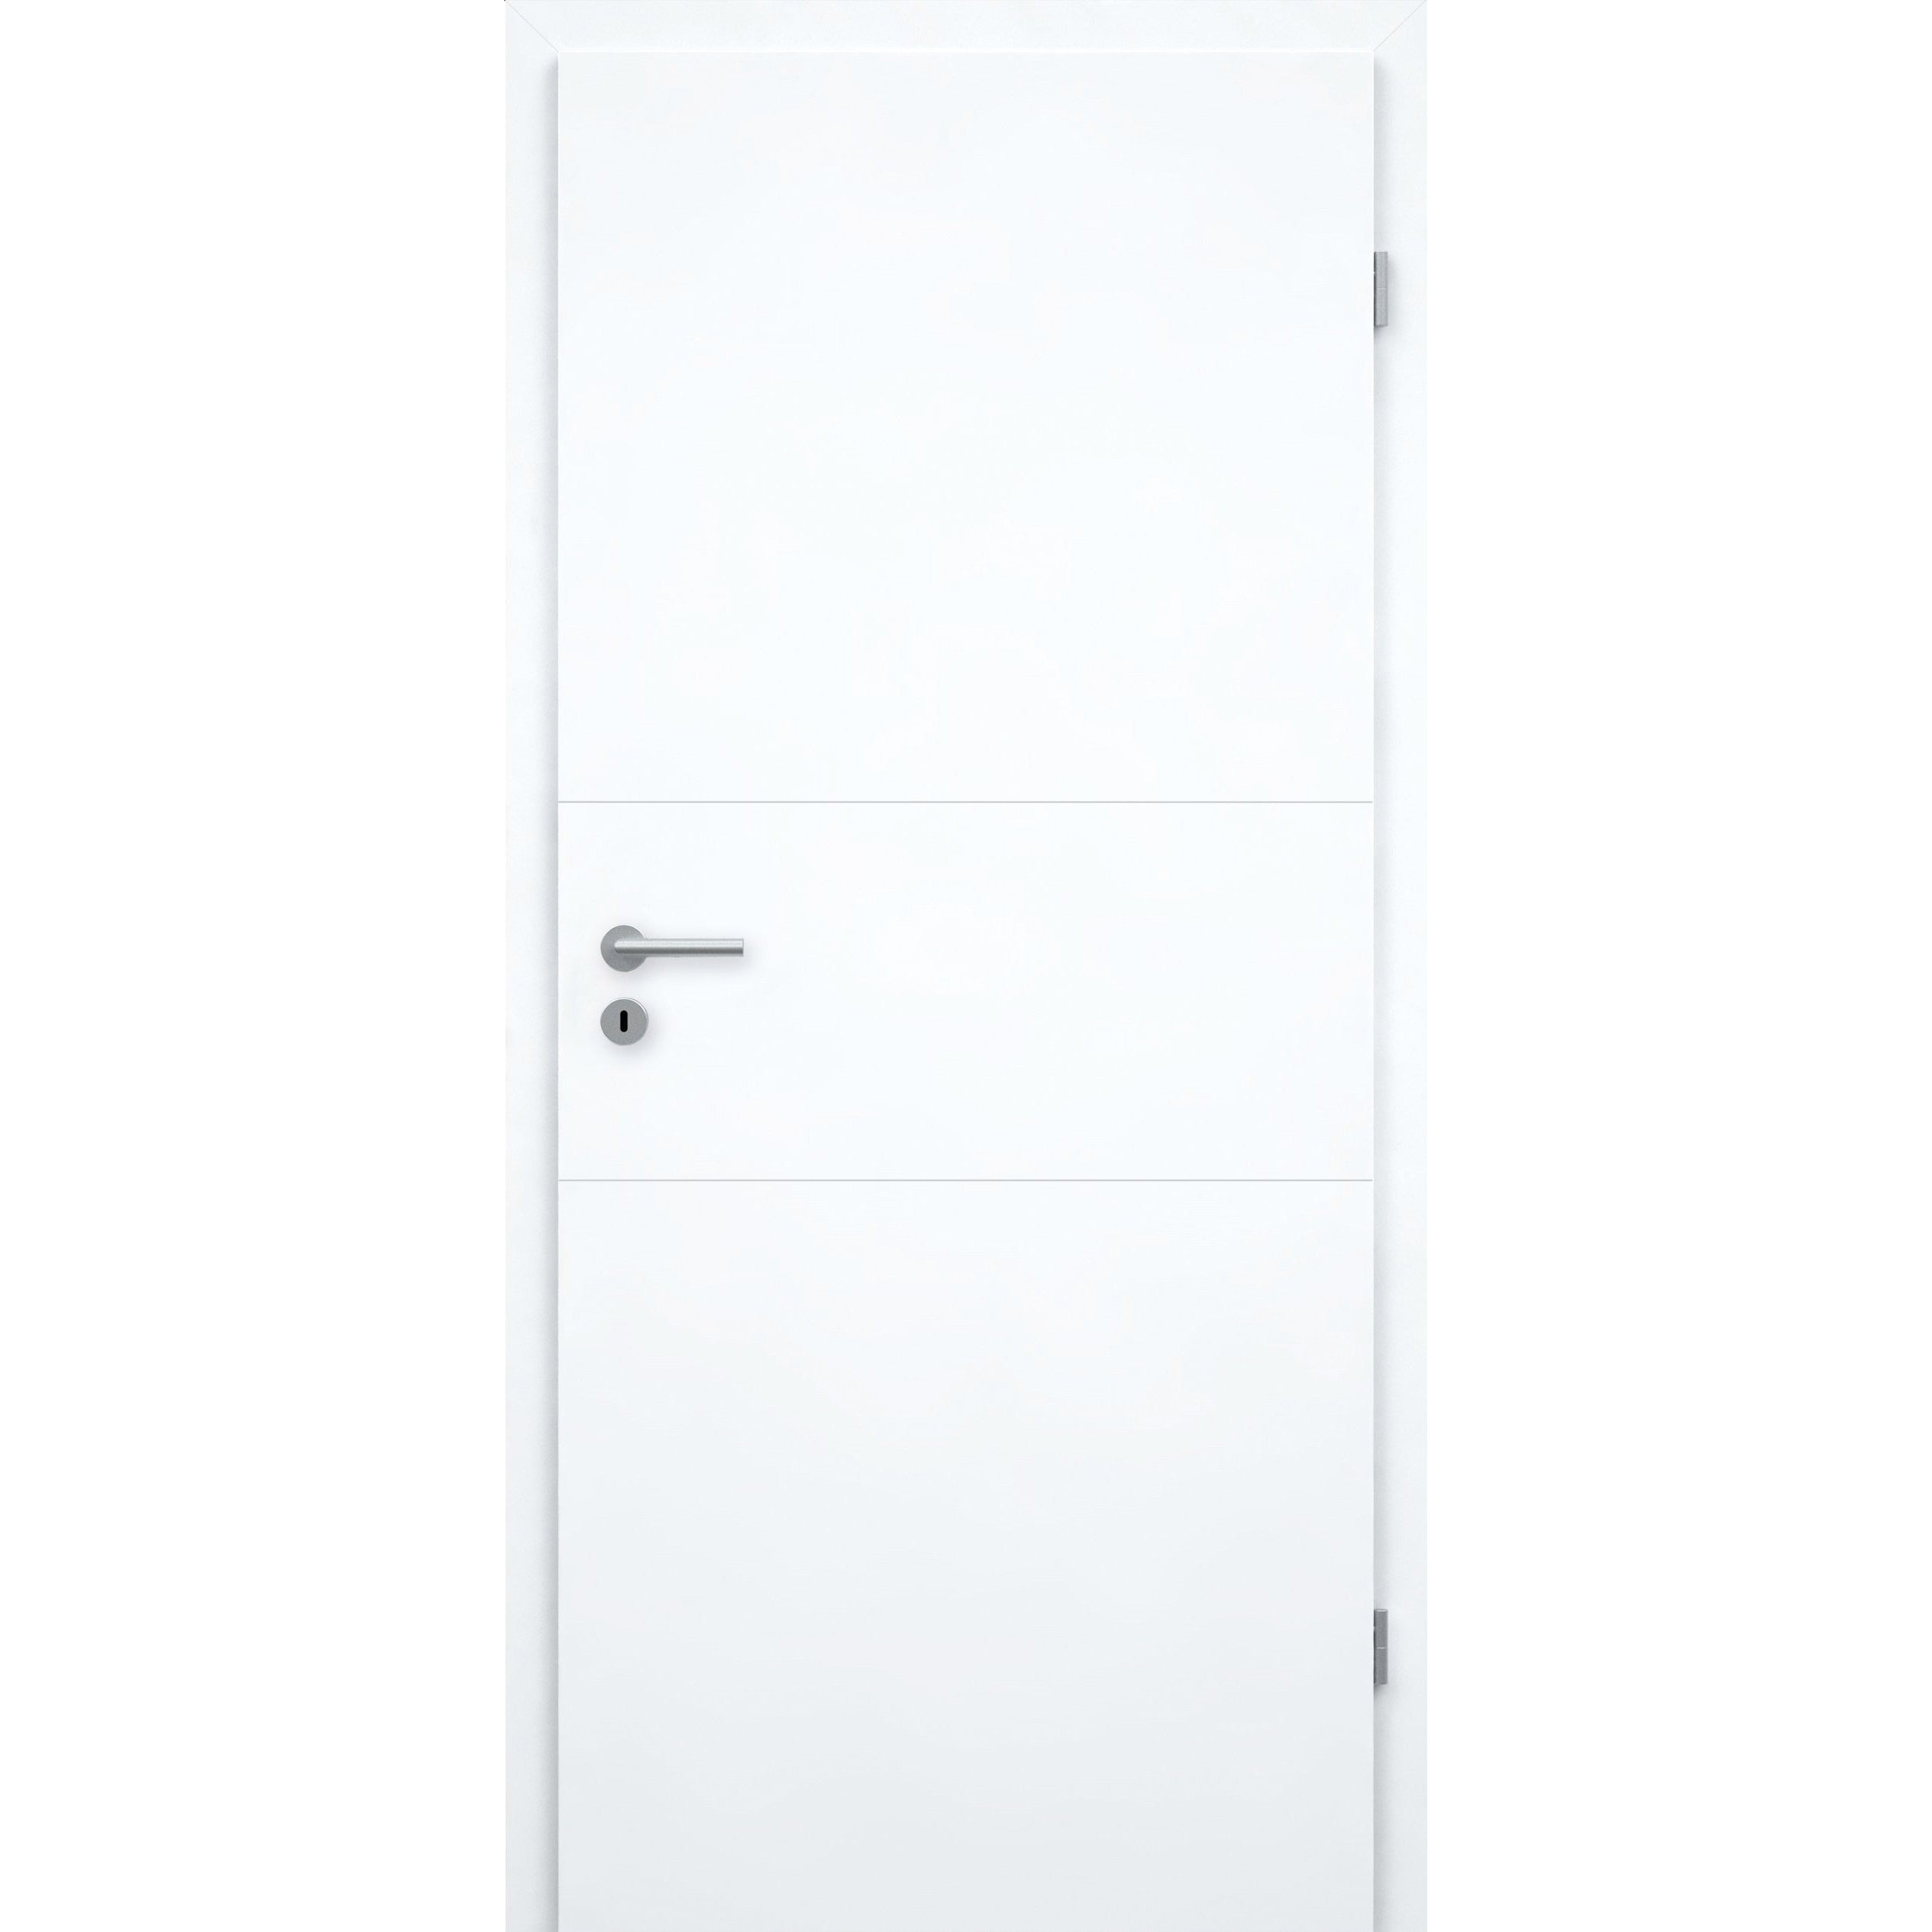 Zimmertür brillant-weiß 2 Rillen quer Designkante - Modell Designtür Q23